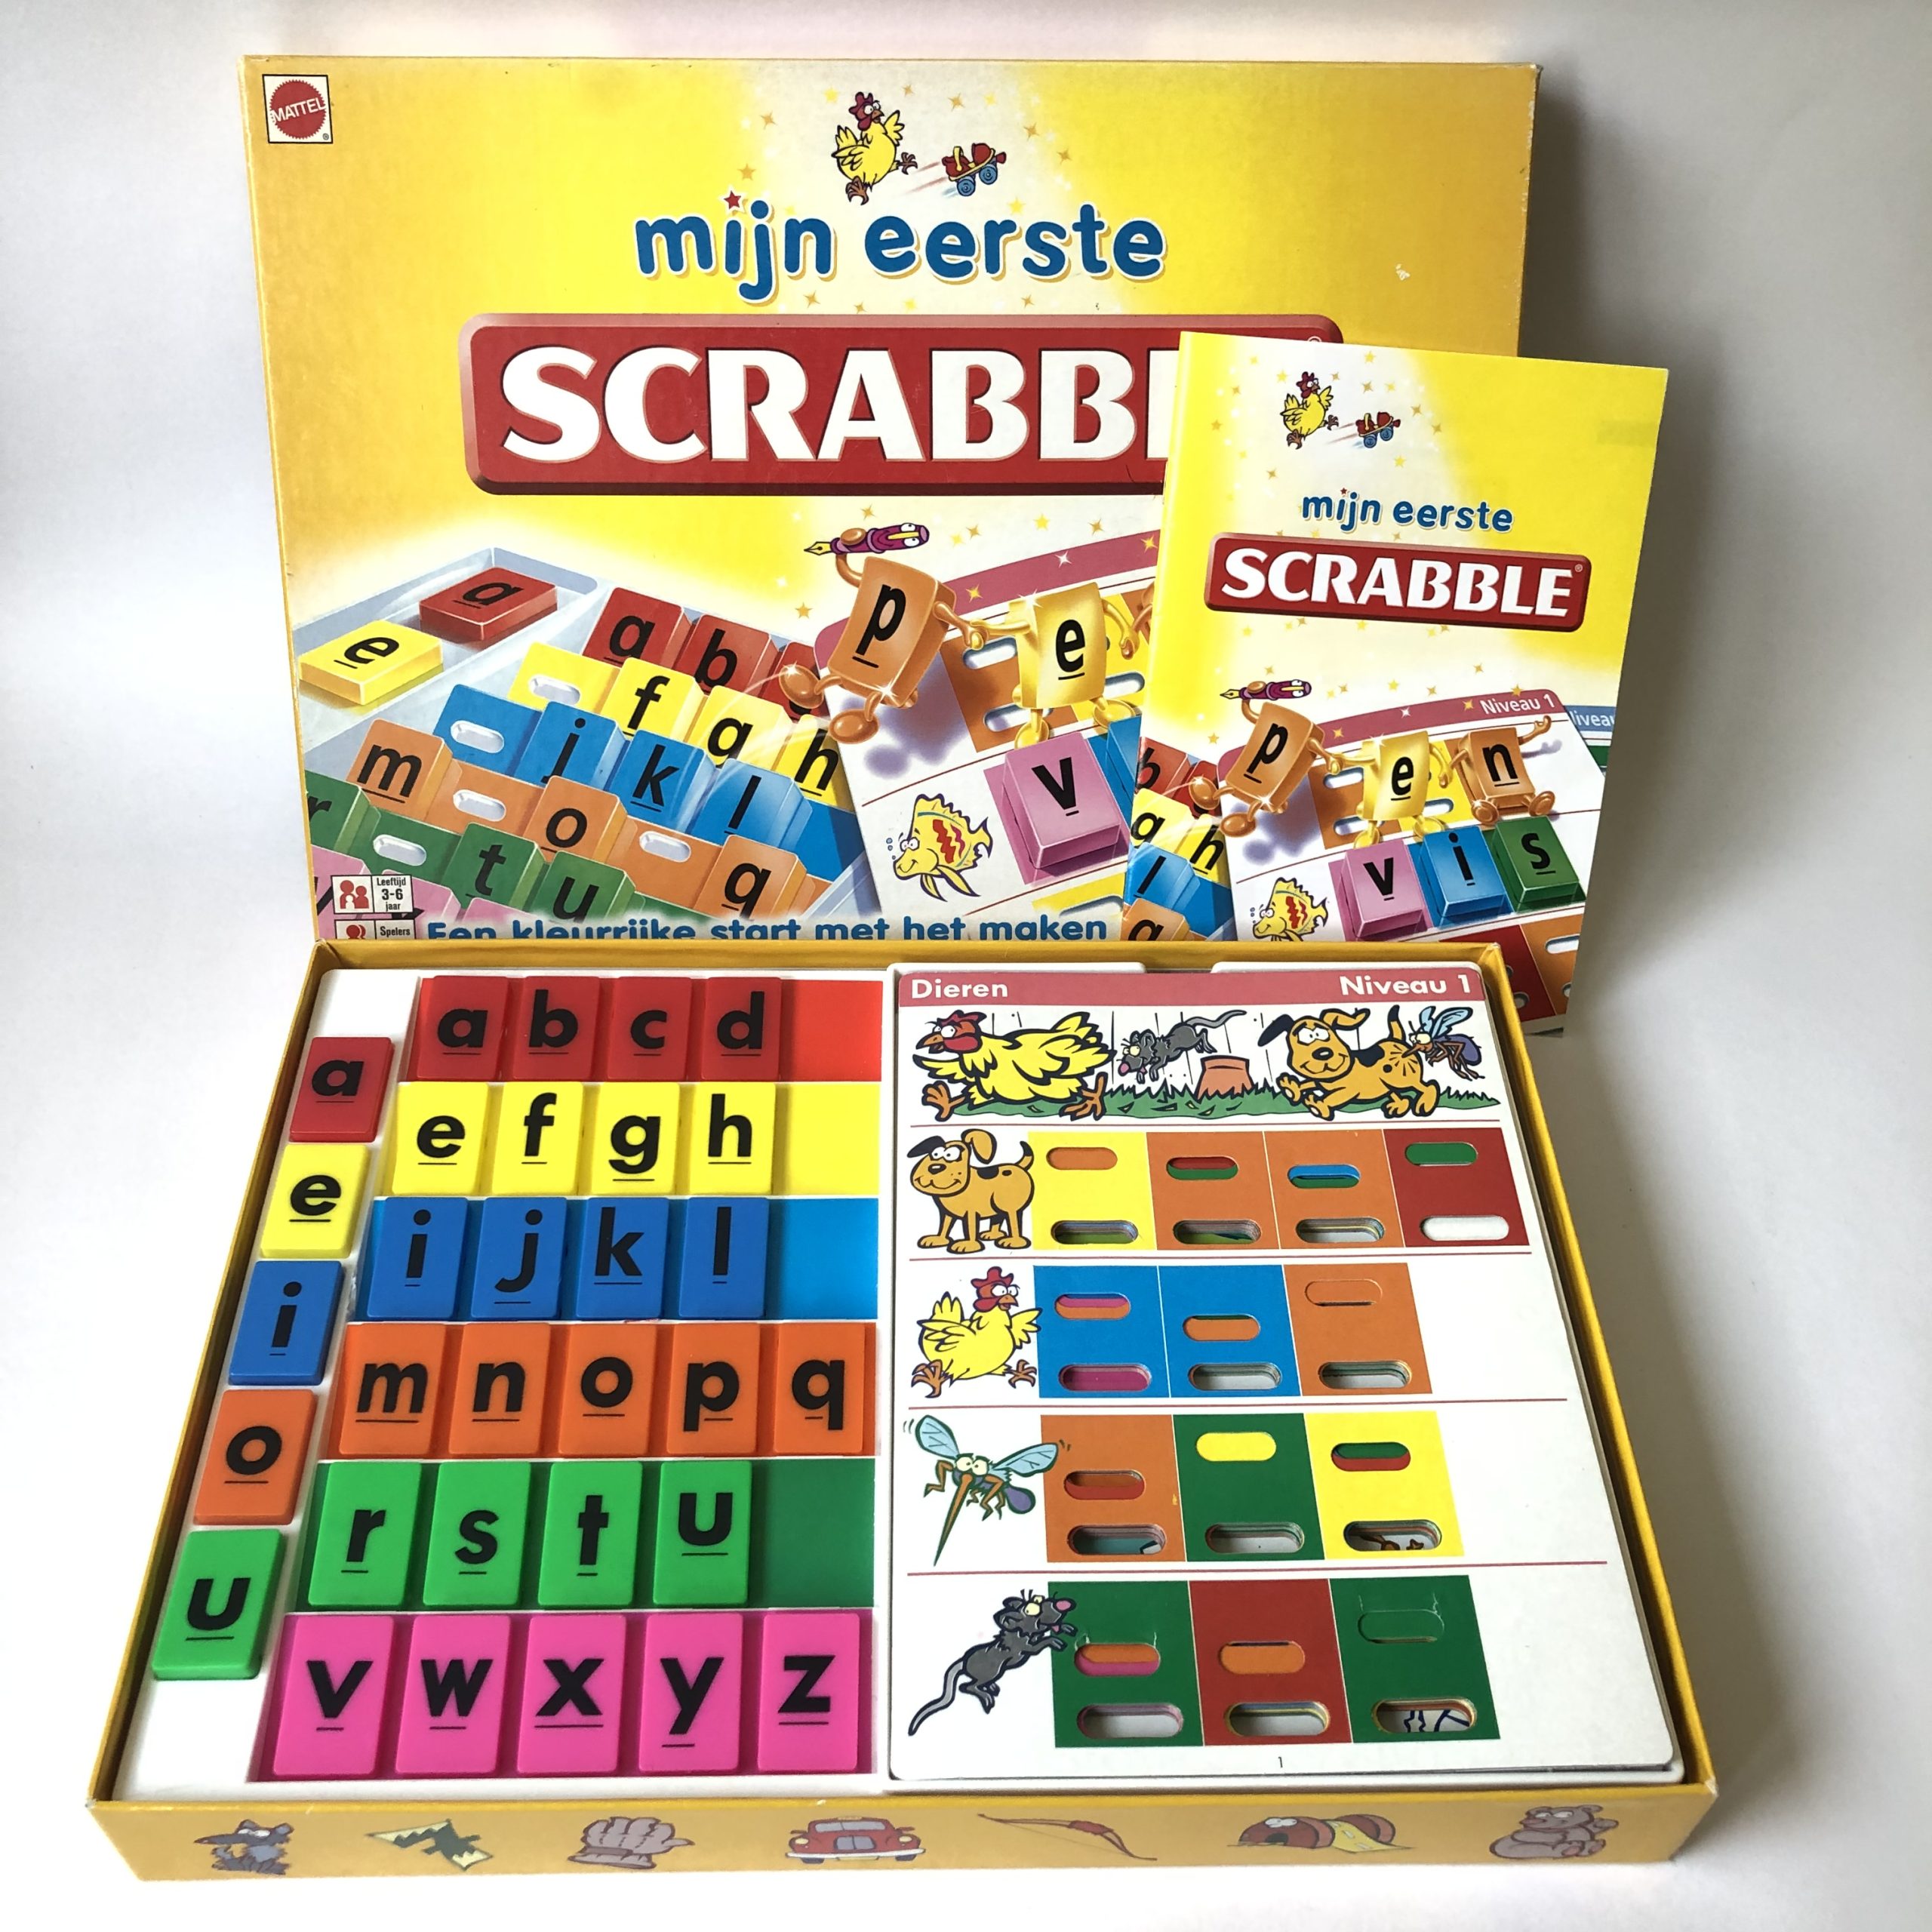 Mijn eerste Scrabble van Mattel uit jaar 2000 (2)